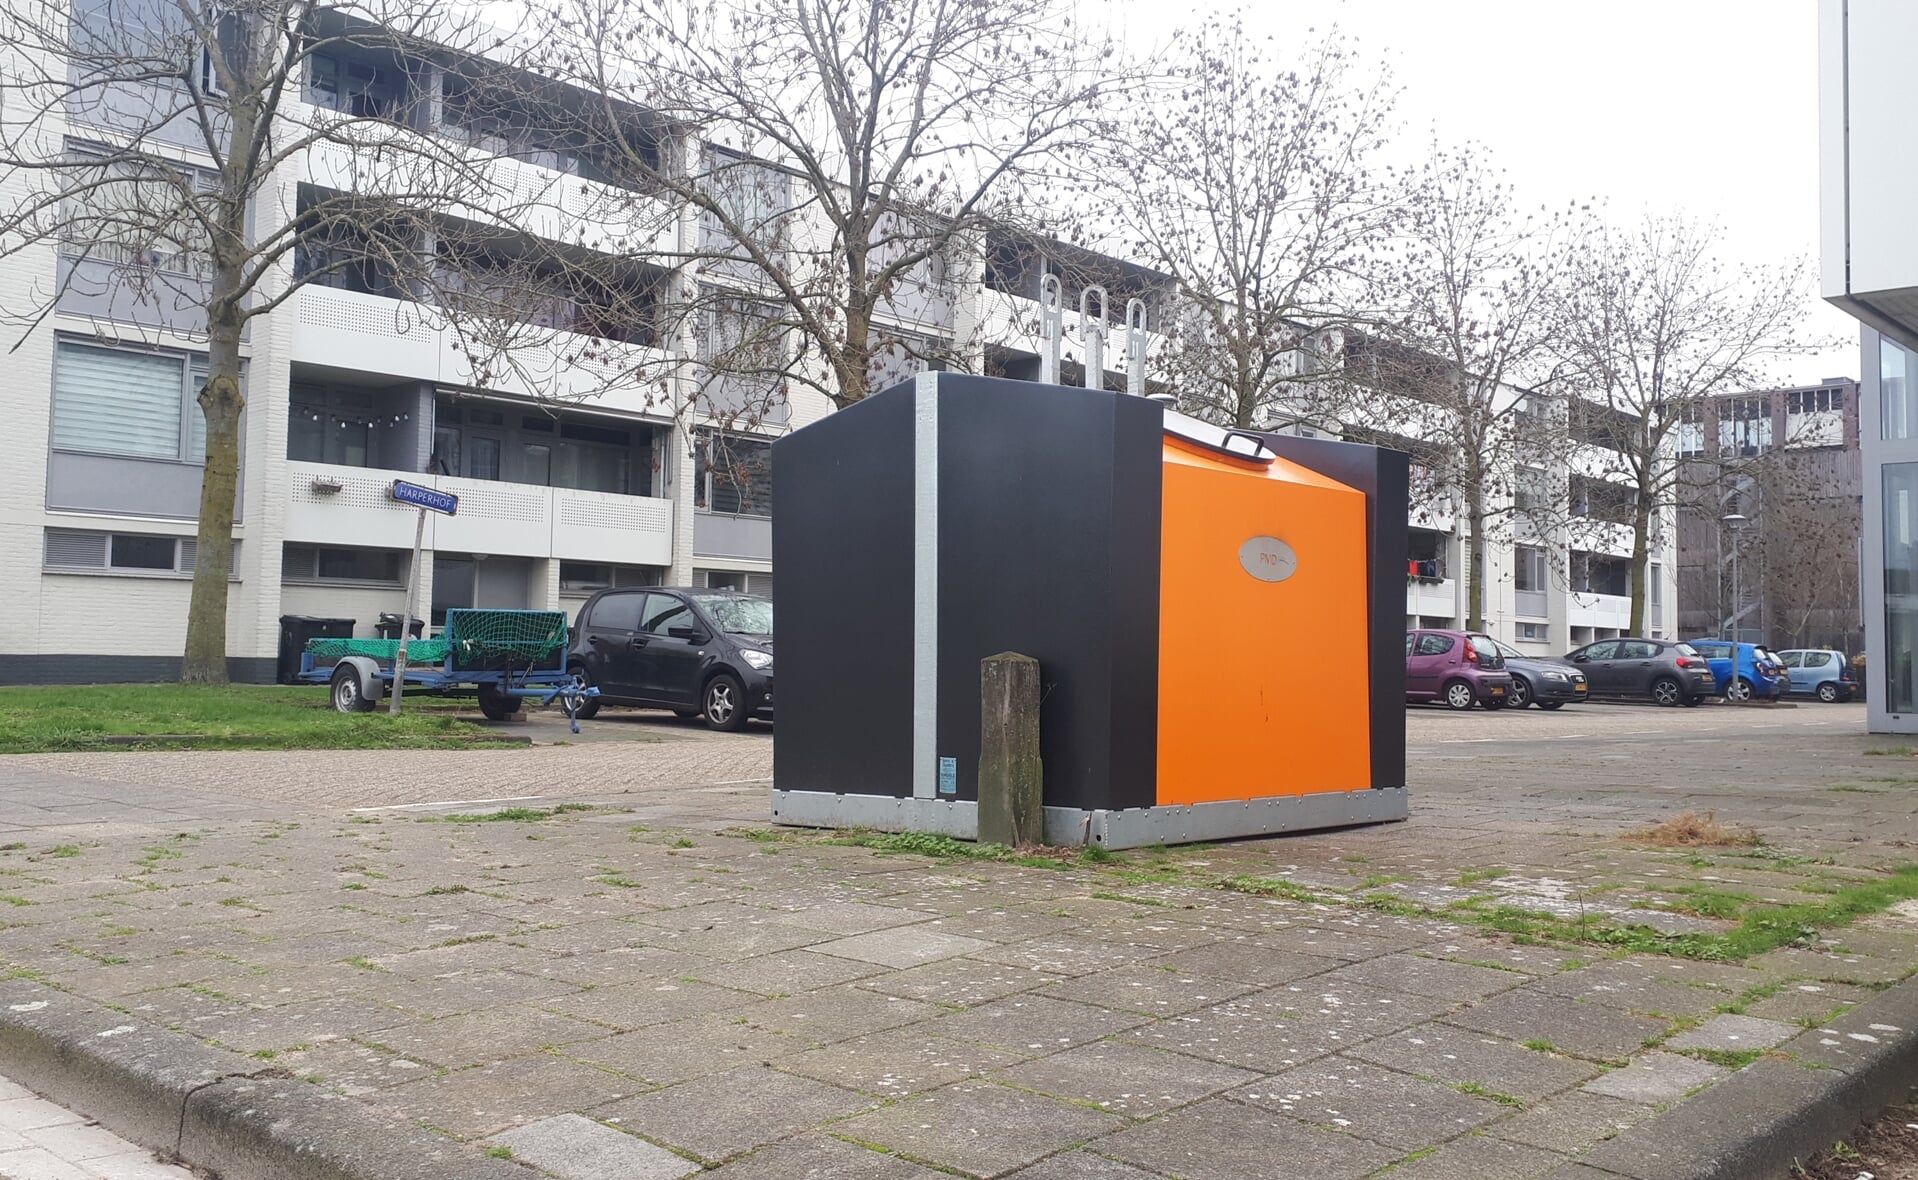 Afvalcontainers voor plastic, metaal en drankkartonnen zijn vorige week geplaatst bij Hof ter Aa en Harperhof, dit om zwerfafval tegen te gaan. Het is een proef van de gemeente Boxtel.  